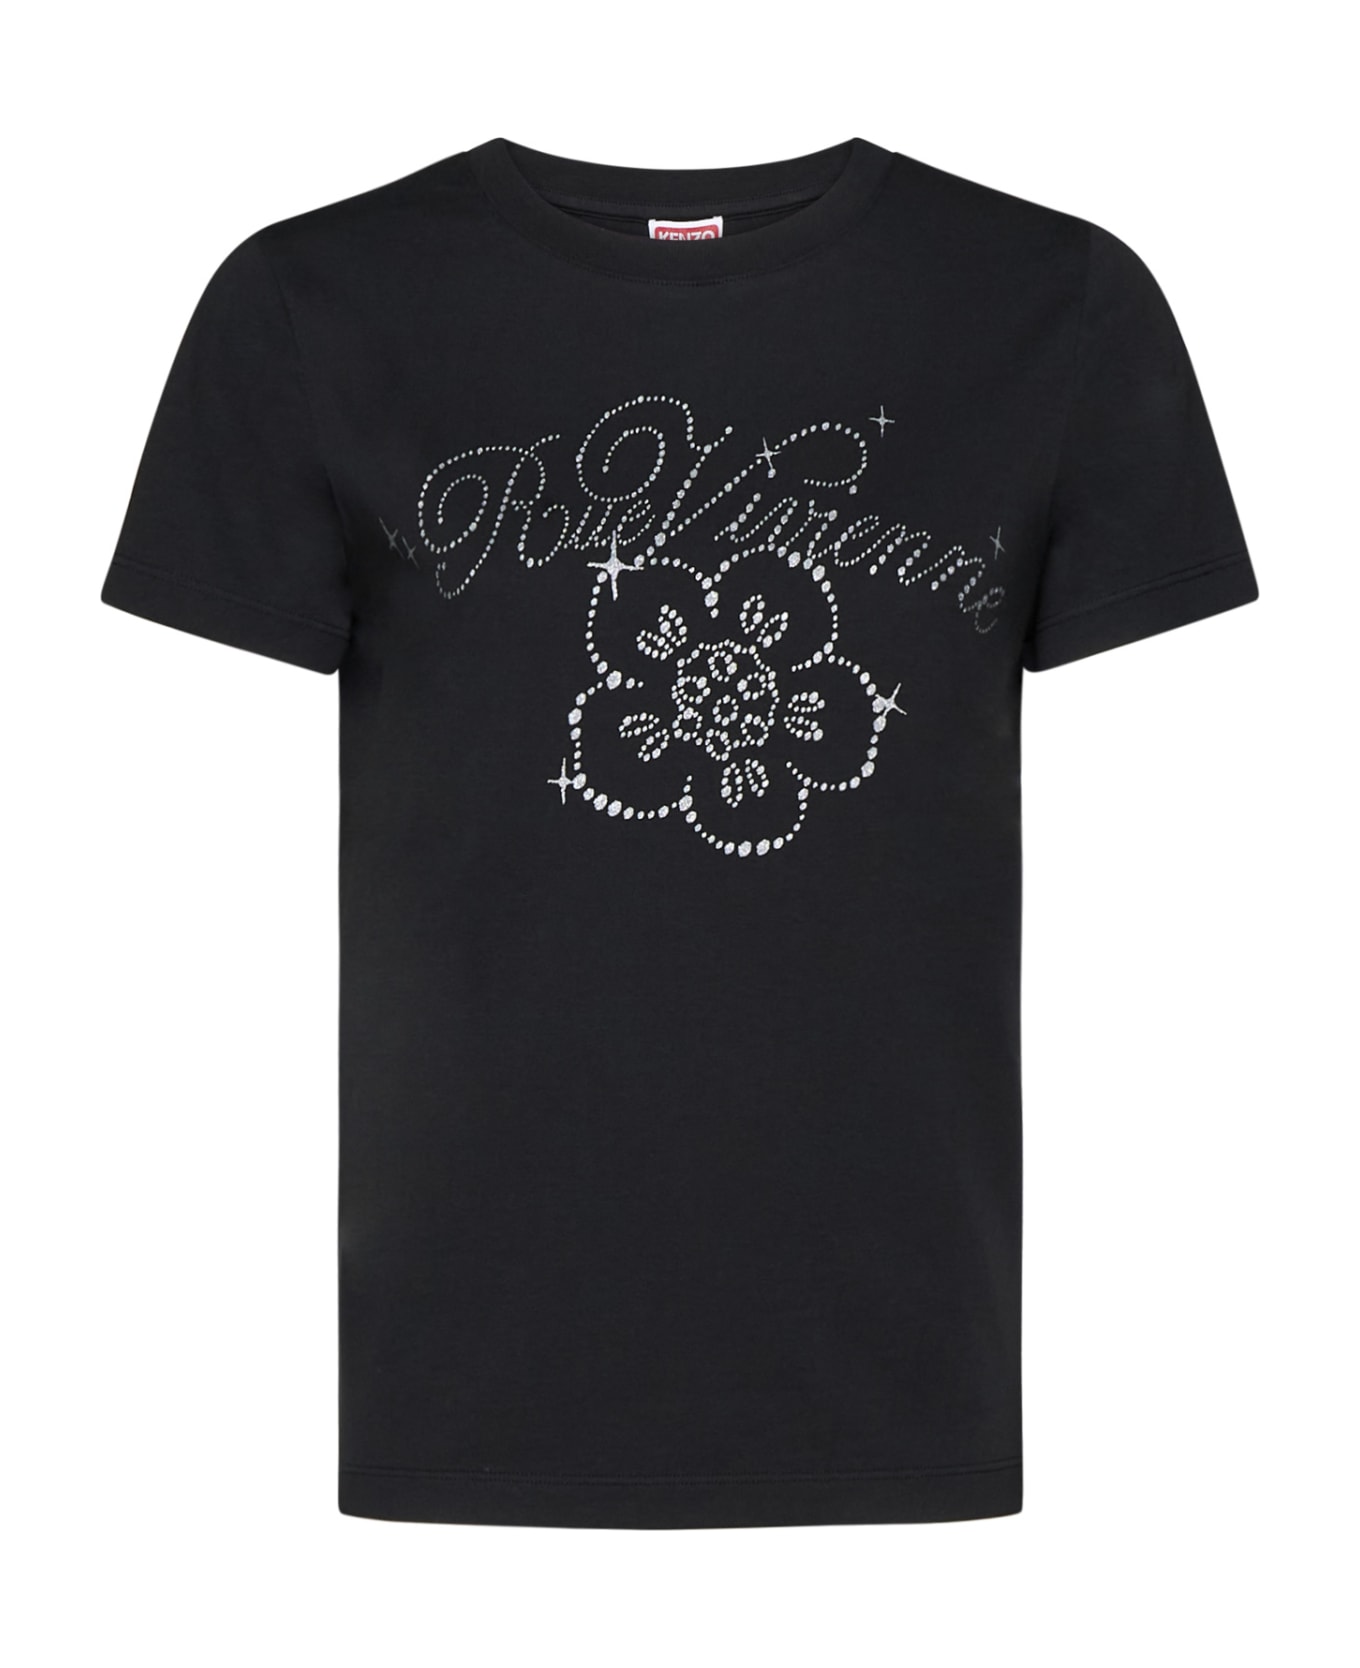 Kenzo T-Shirt - Black Tシャツ